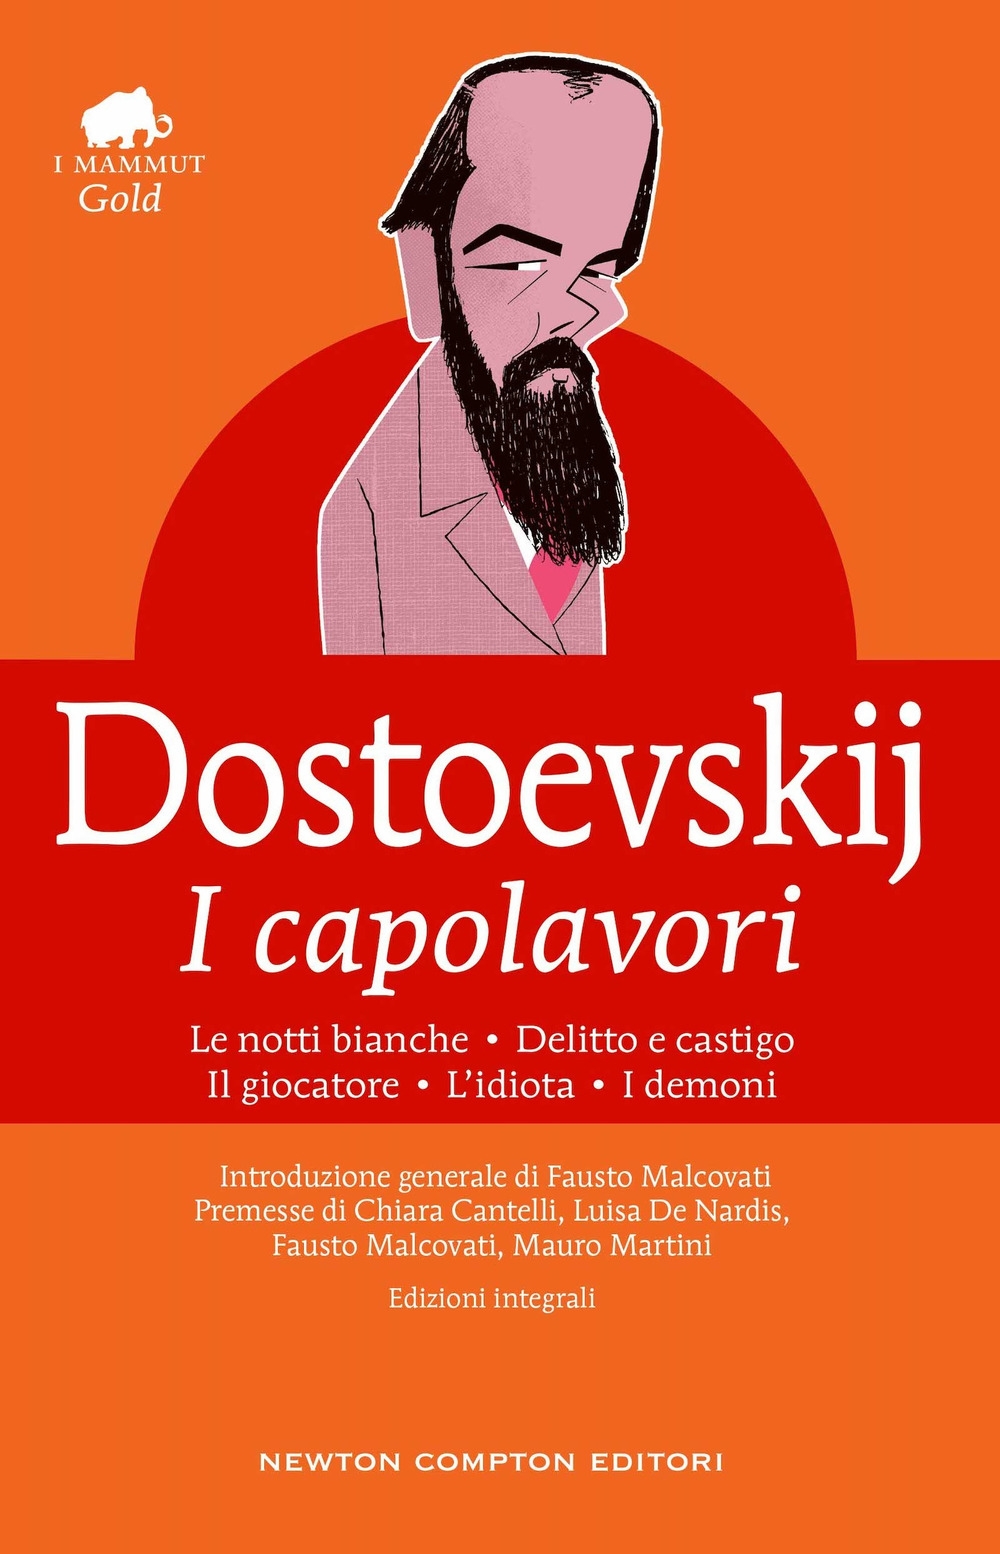 9788822769985 Fëdor Dostoevskij 2022 - I capolavori: Le notti  bianche-Delitto e castigo-Il giocatore-L'idiota-I demoni 